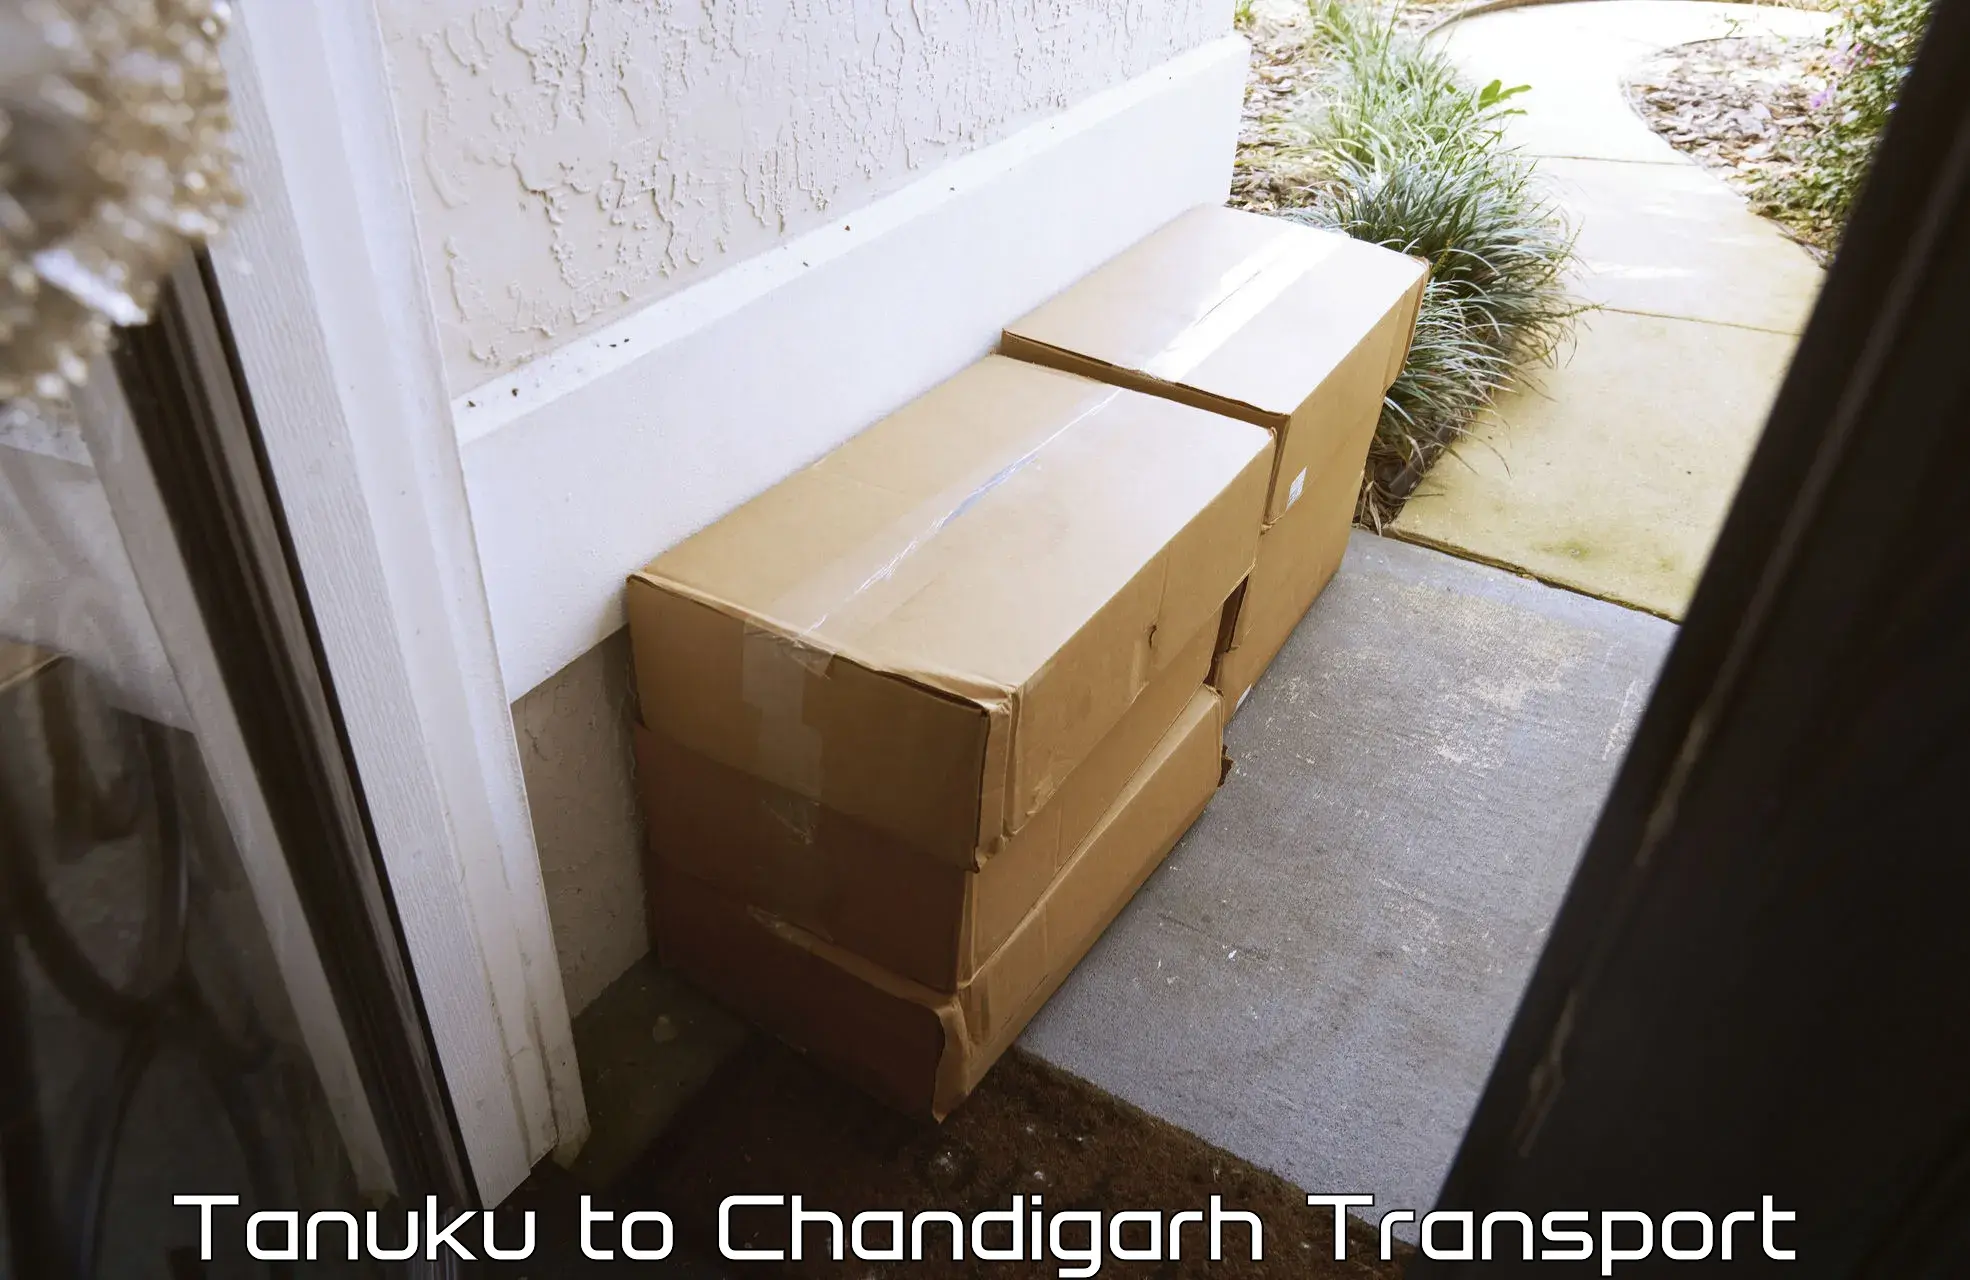 Online transport Tanuku to Chandigarh